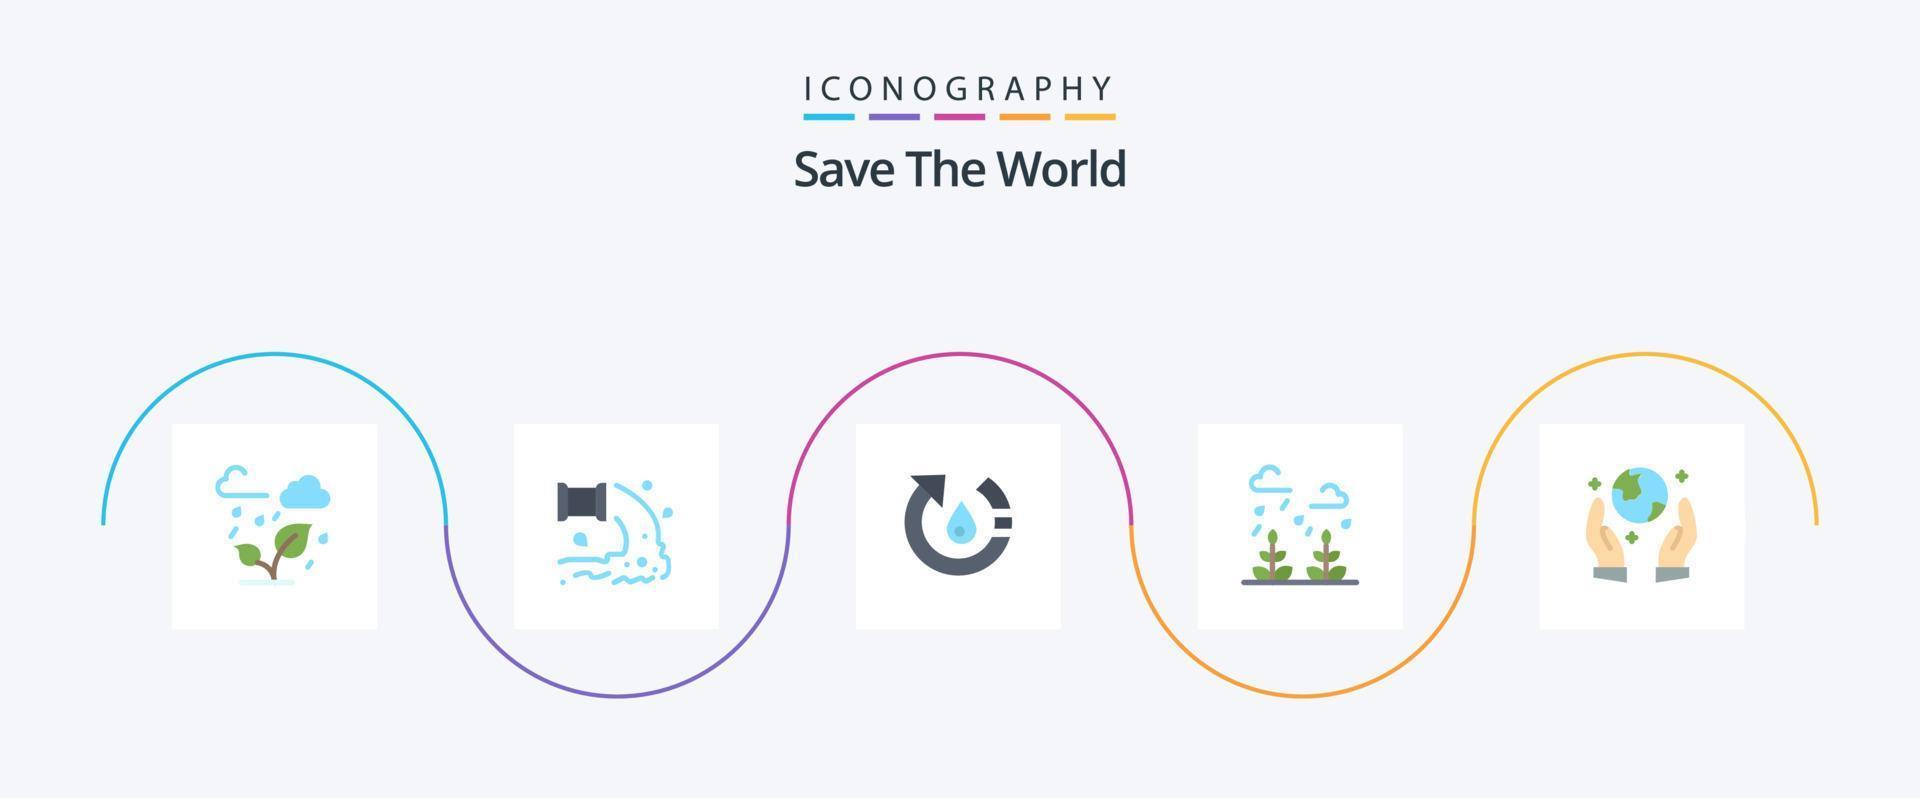 salva el paquete de iconos de 5 planos del mundo que incluye la vida. crecimiento. agua. ambiente. naturaleza vector